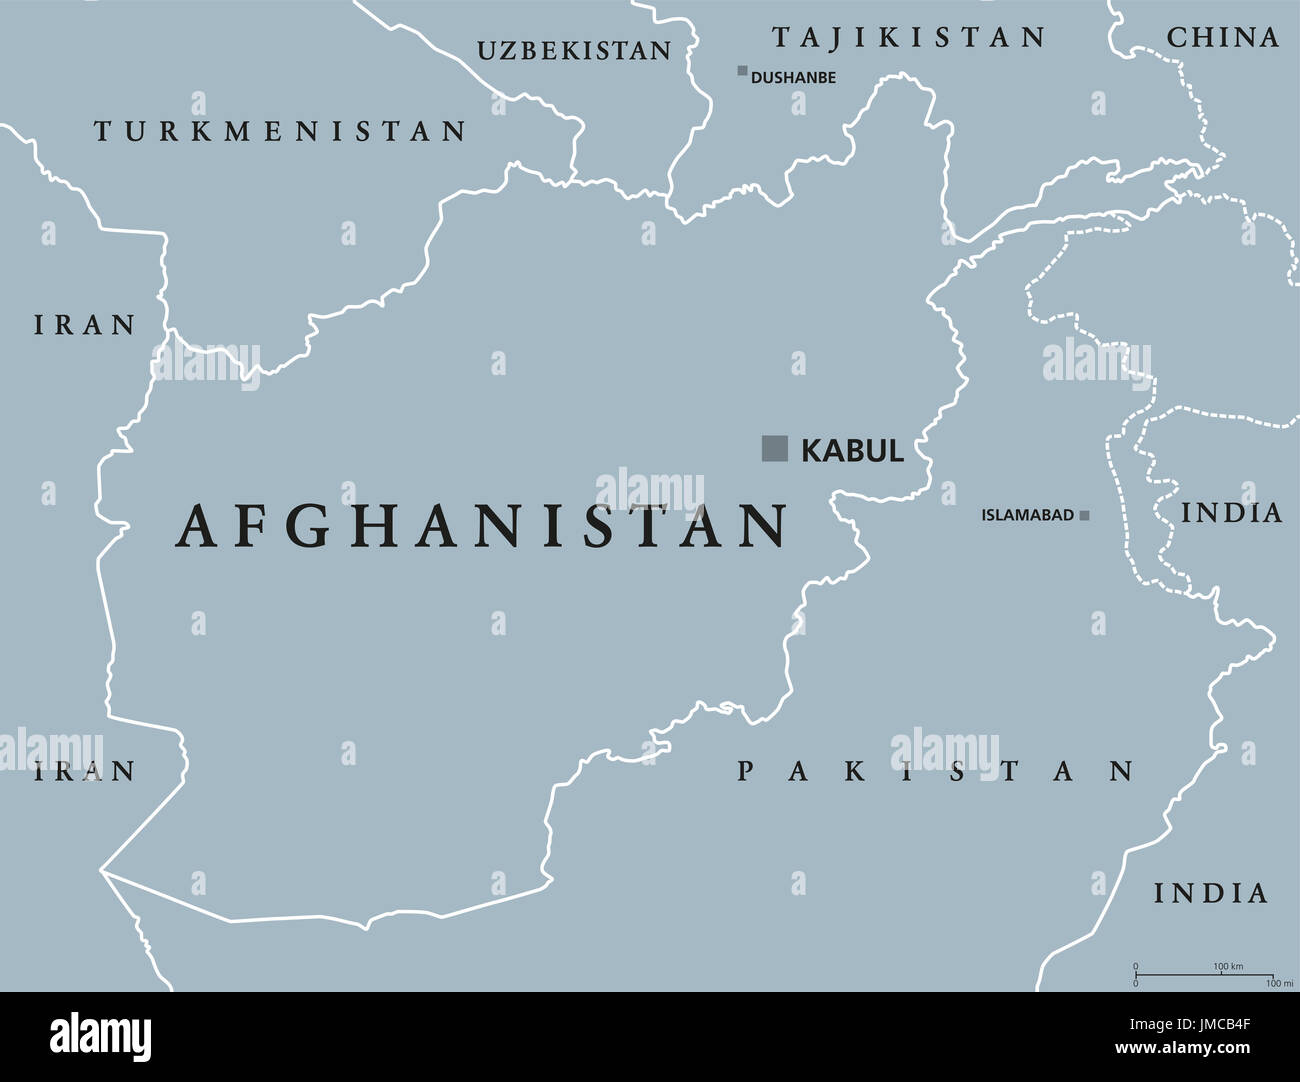 Carte politique de l'Afghanistan à Kaboul la capitale et frontières. République islamique et pays enclavé d'Asie centrale et du Sud. Gris illustration. Banque D'Images